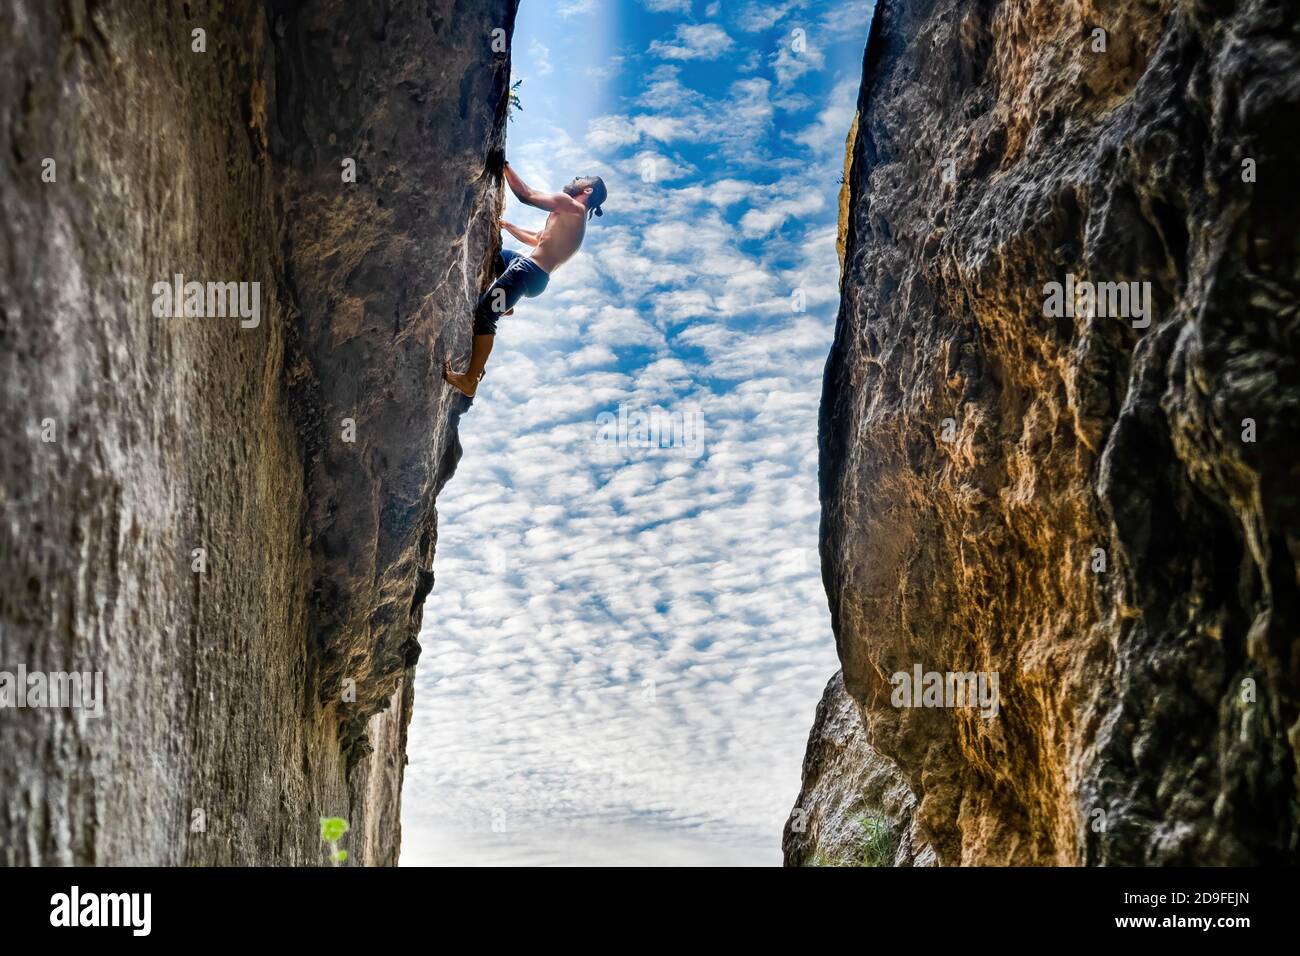 Jeune homme libre en solo escalade un mur vertical sans corde et entre deux  murs Photo Stock - Alamy